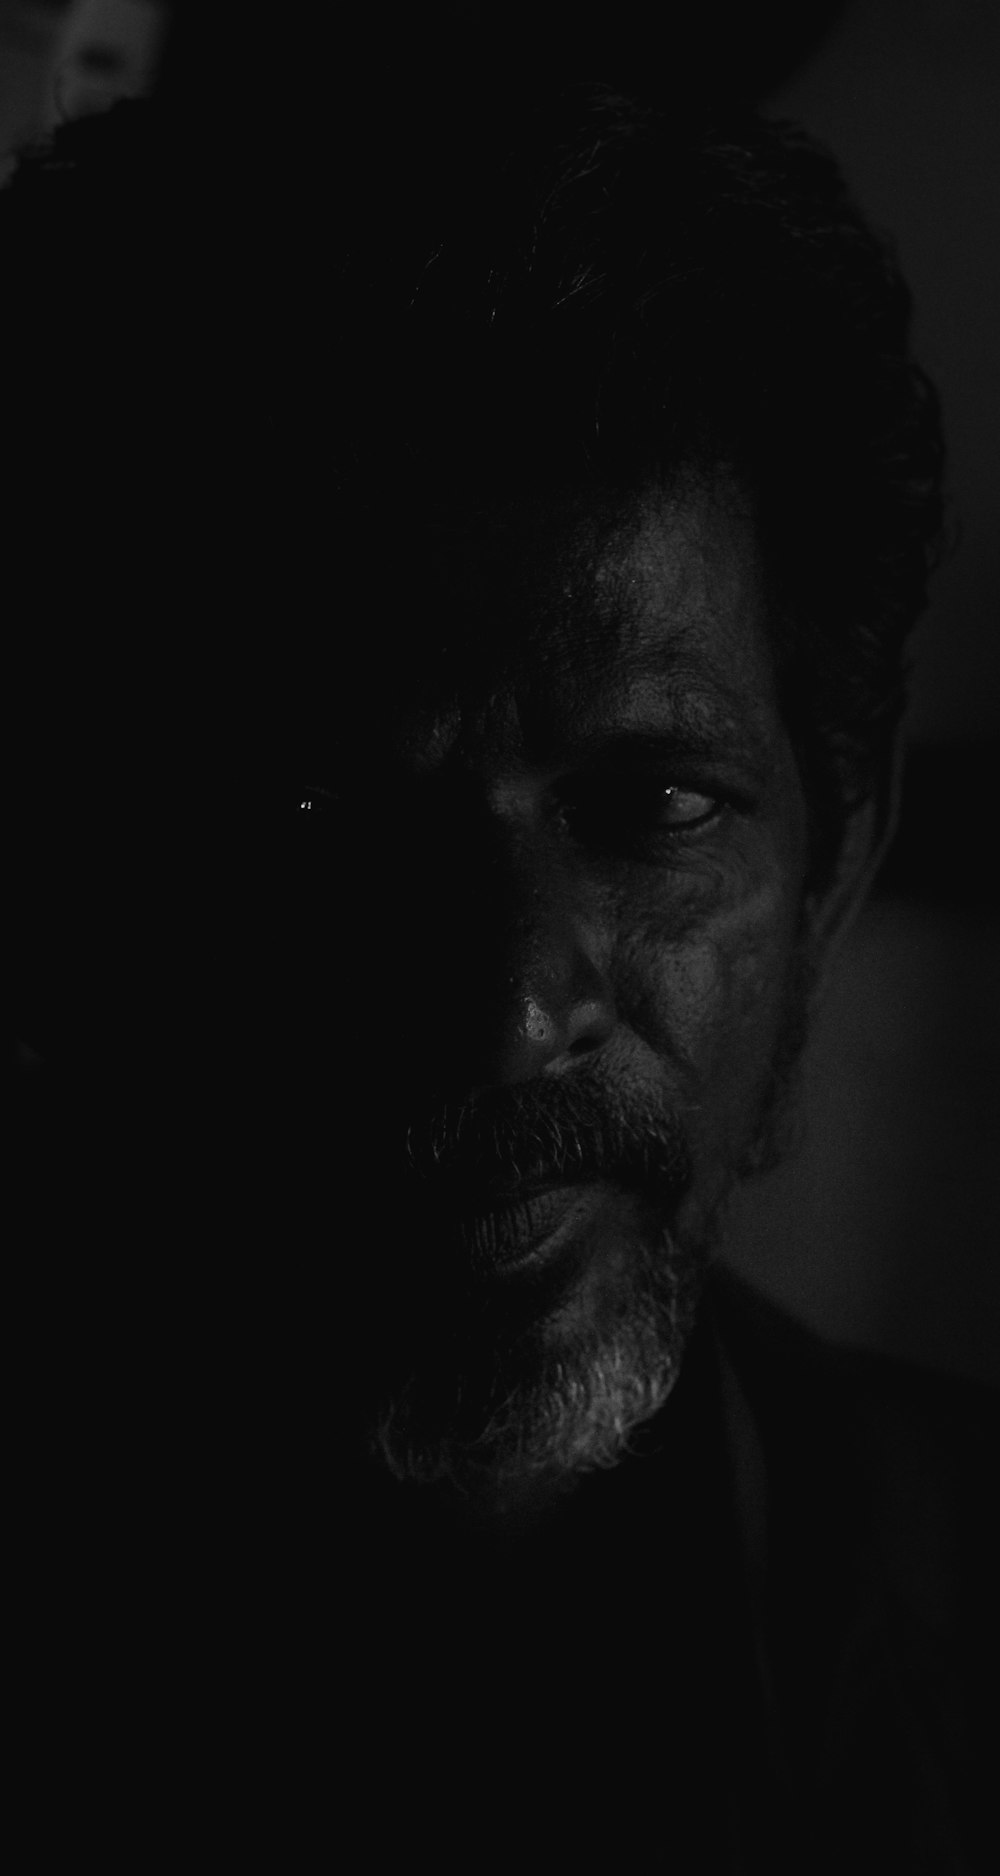 어둠 속에서 한 남자의 흑백 사진